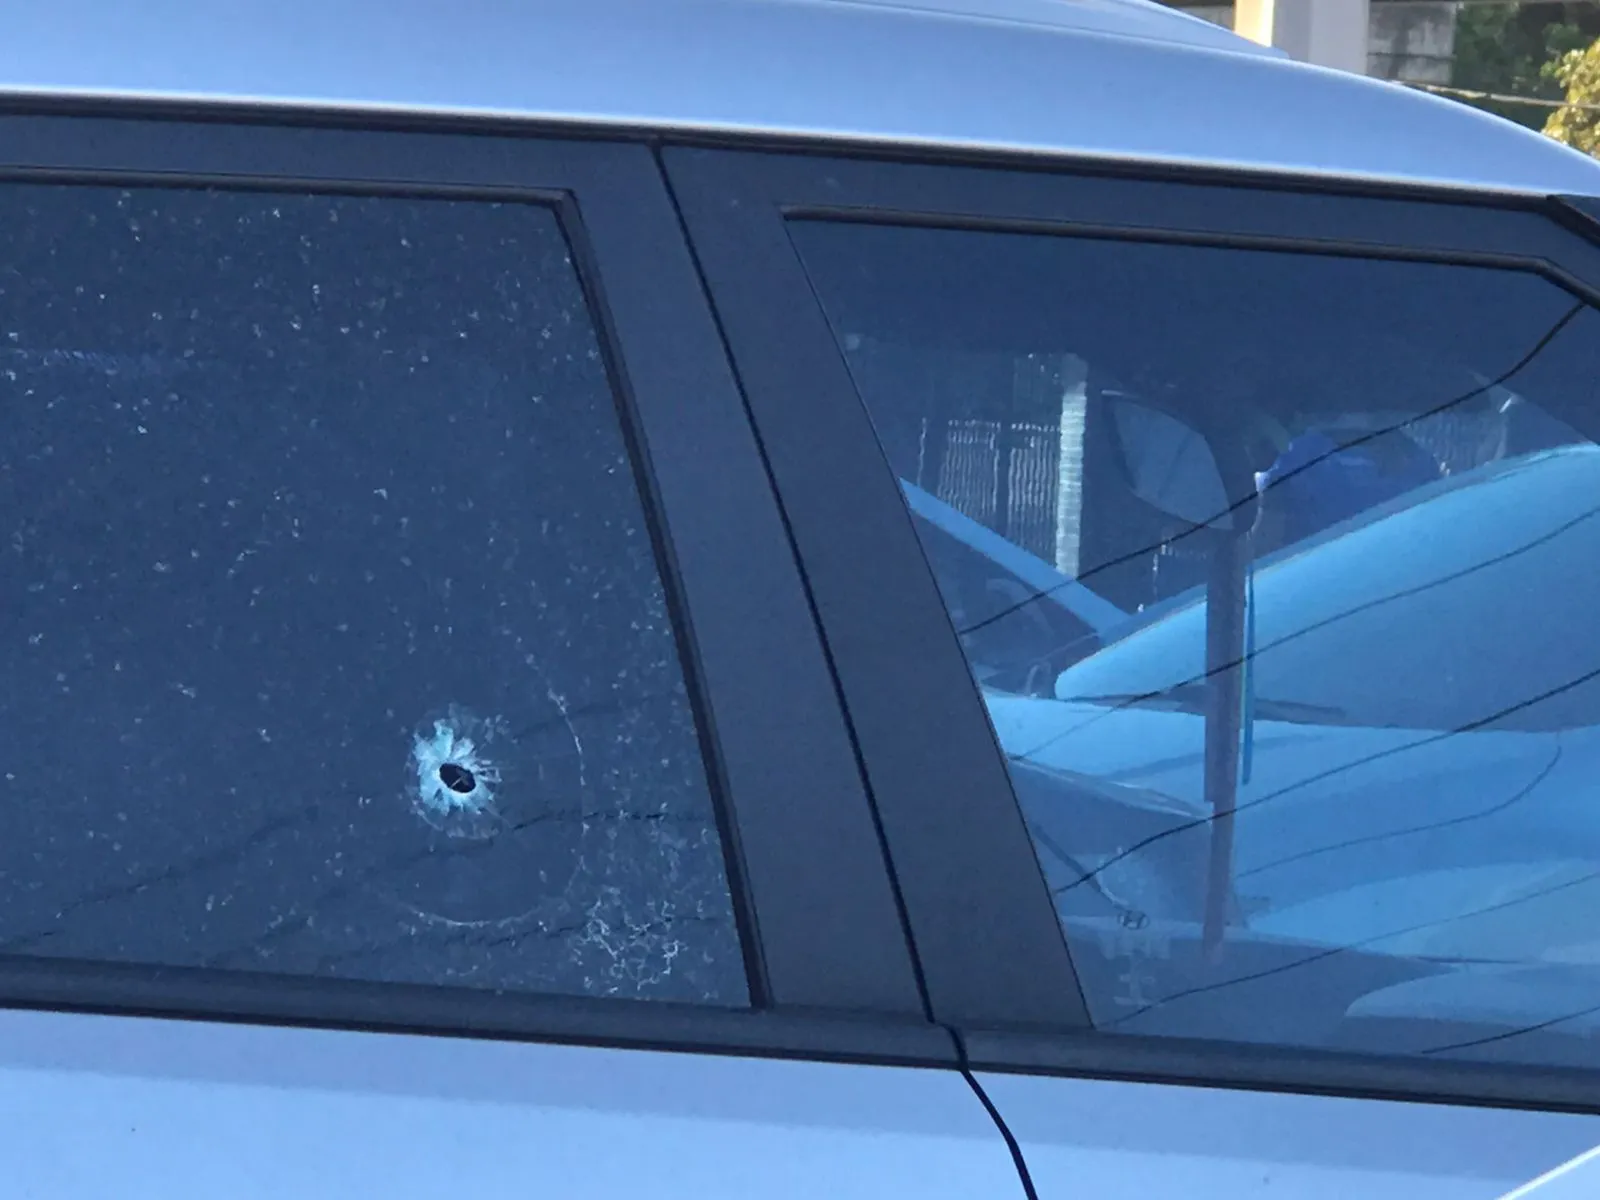 Carro atingido por bala no estacionamento